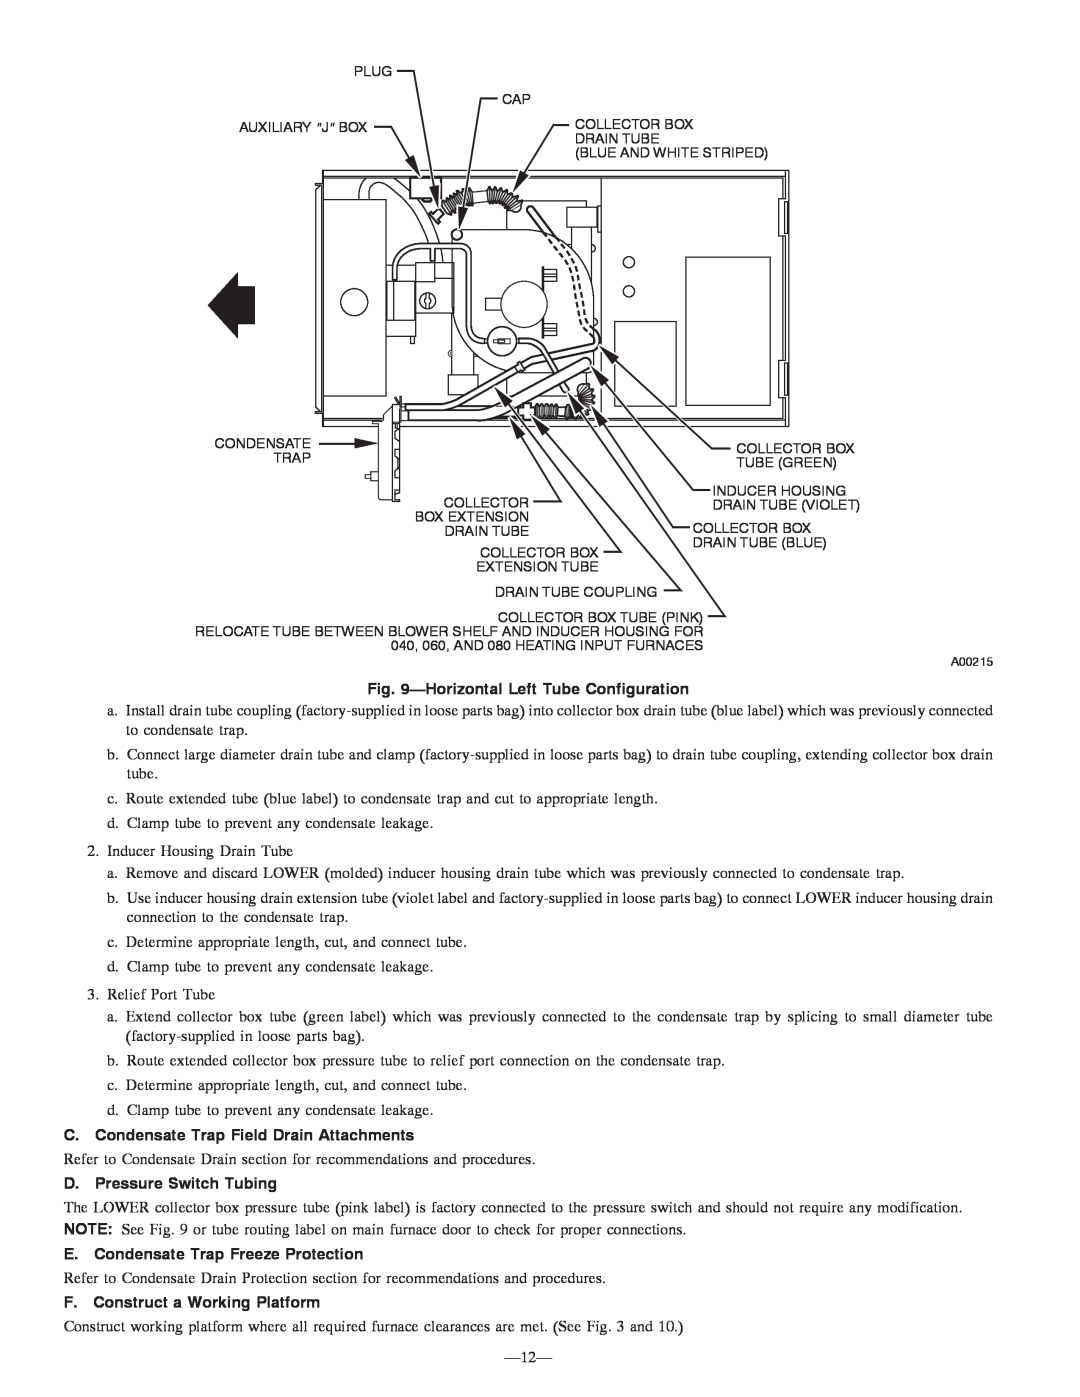 Bryant 355MAV HorizontalLeft Tube Configuration, C. Condensate Trap Field Drain Attachments, D. Pressure Switch Tubing 